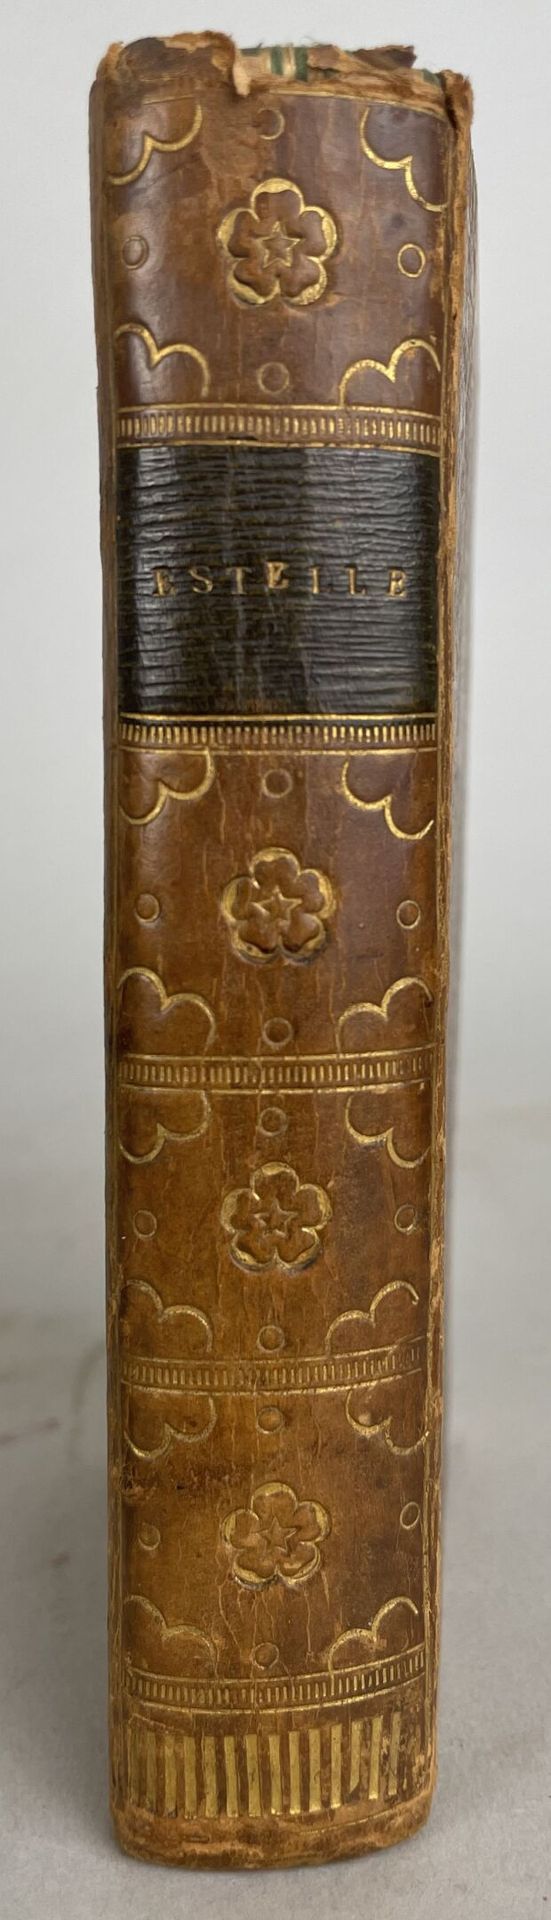 Null 让-皮埃尔-克拉里斯-德-弗洛里安(1755-1794)
埃斯特尔，田园小说
法国巴黎，先生出版社，1788年。
1卷，18开本，用釉面小牛皮装订，板&hellip;